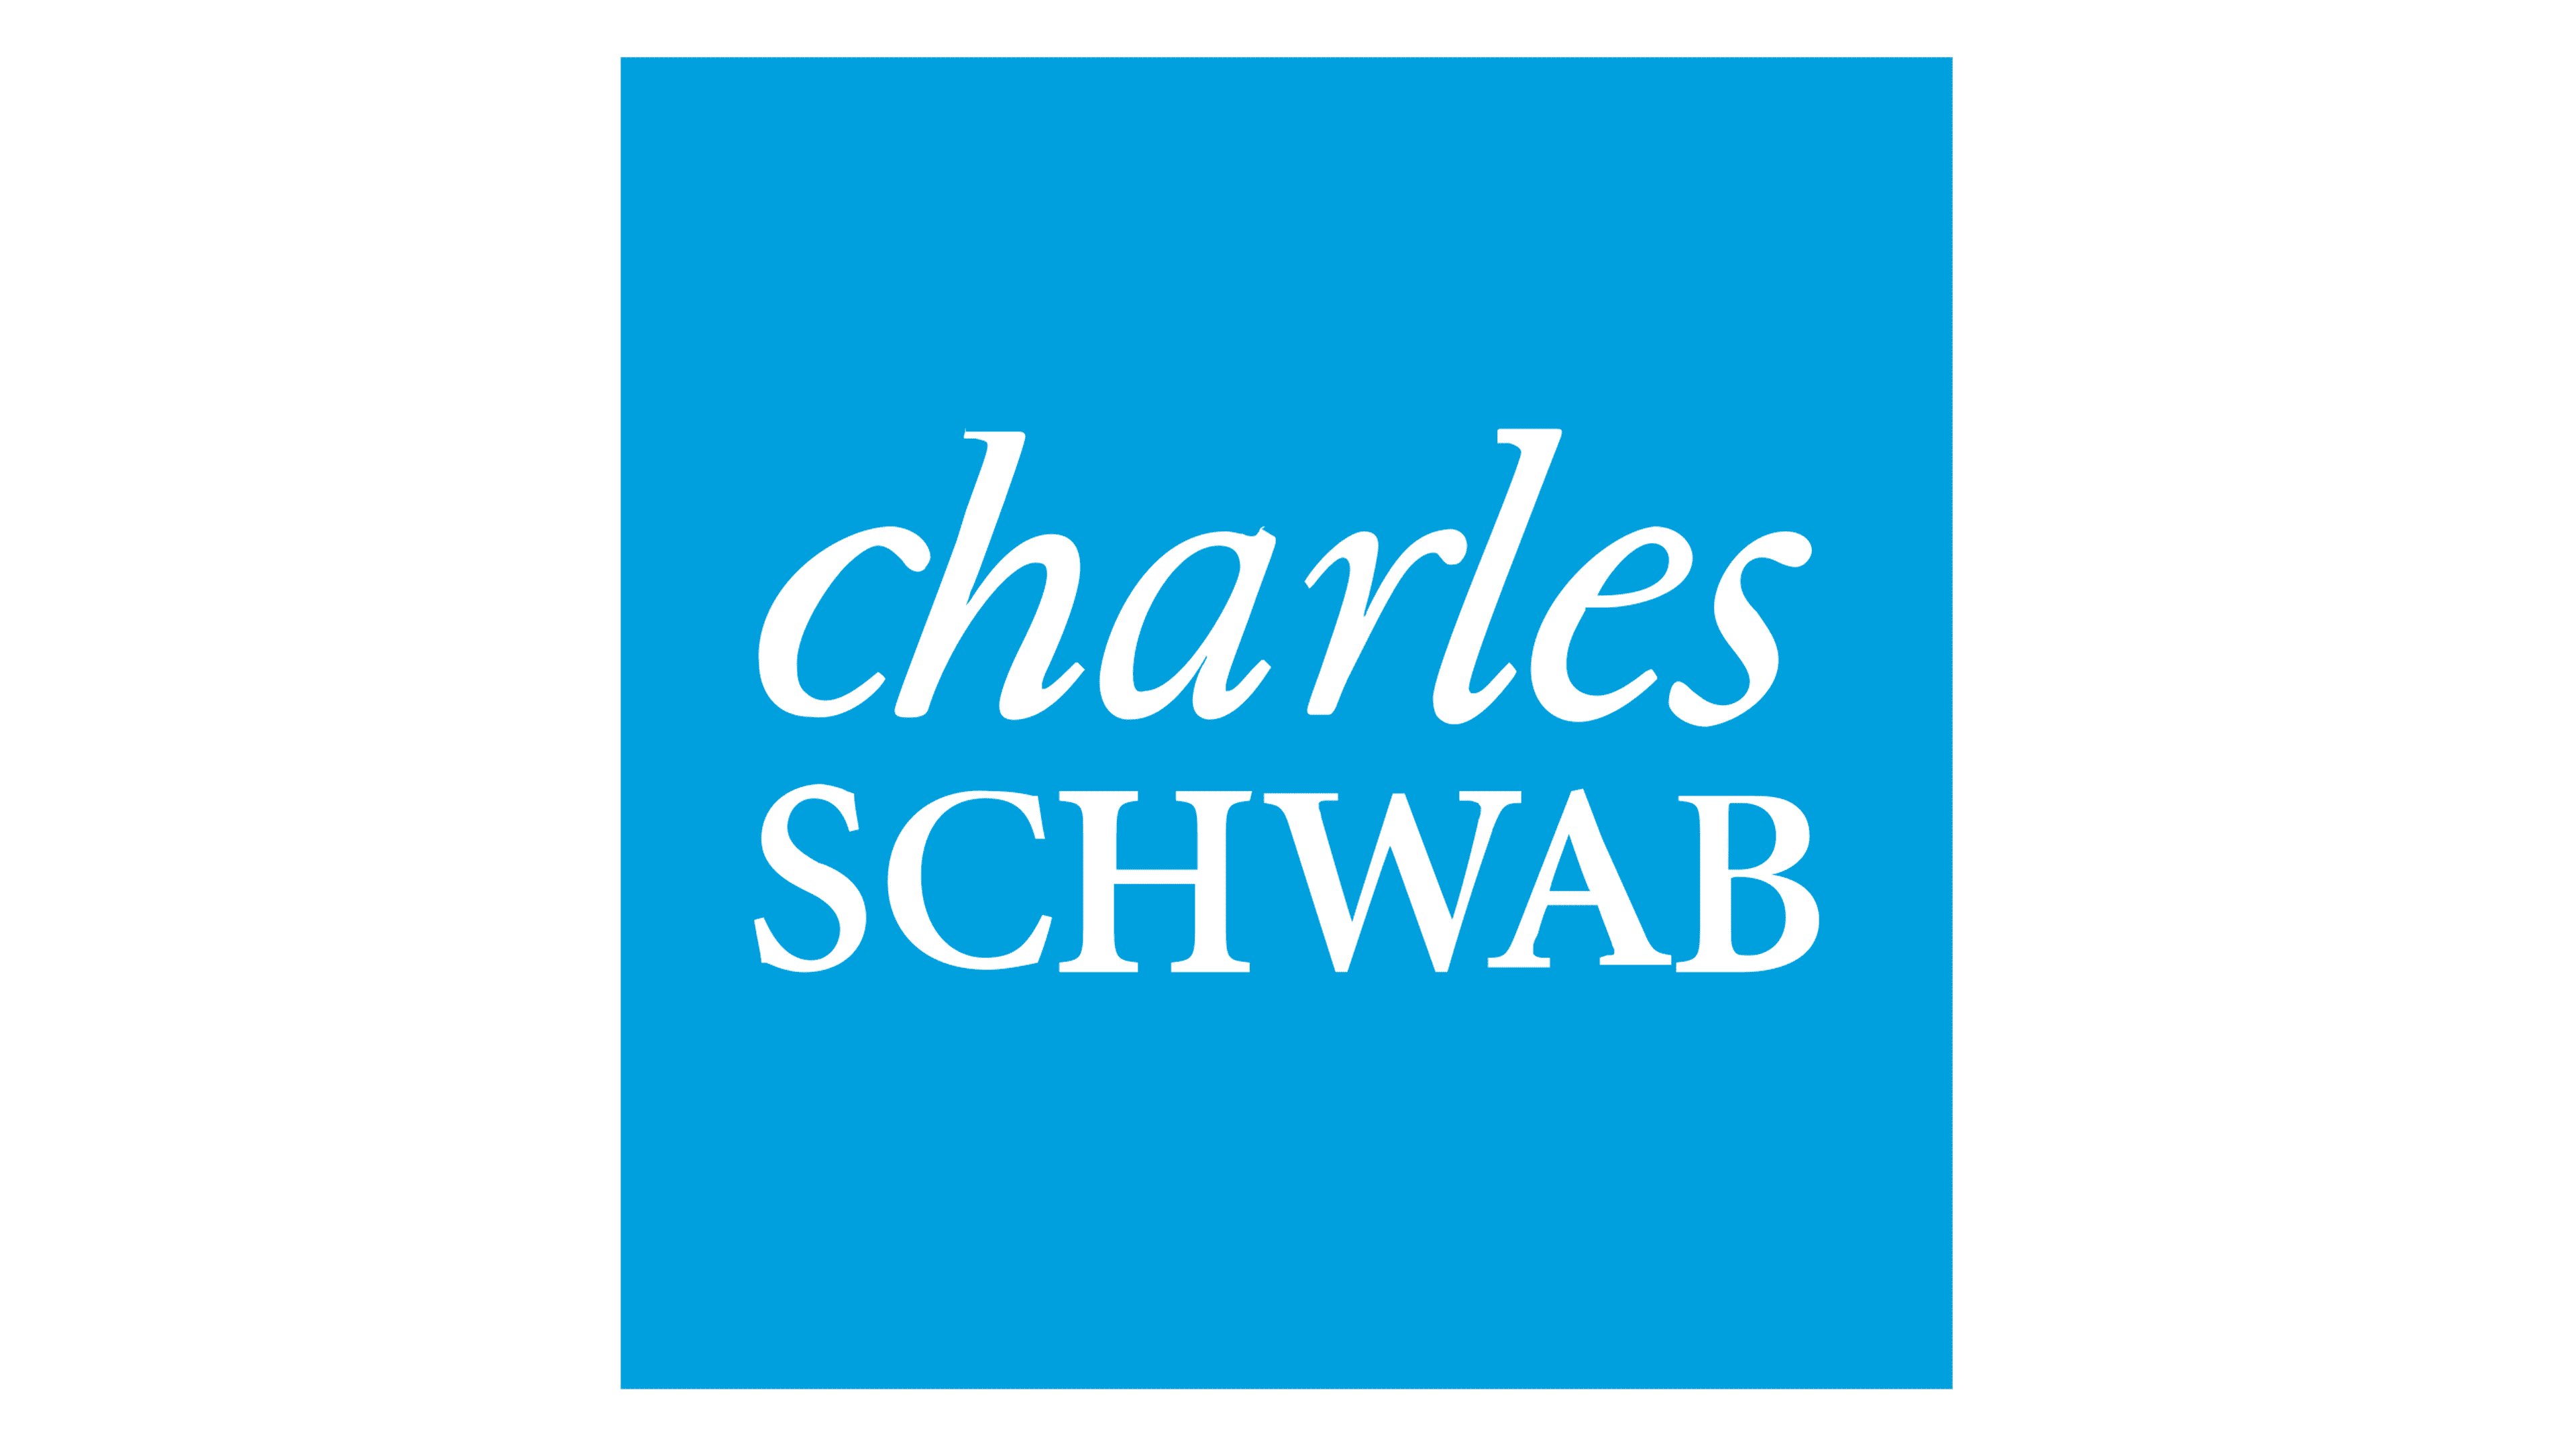 charles-schwab-logo.png